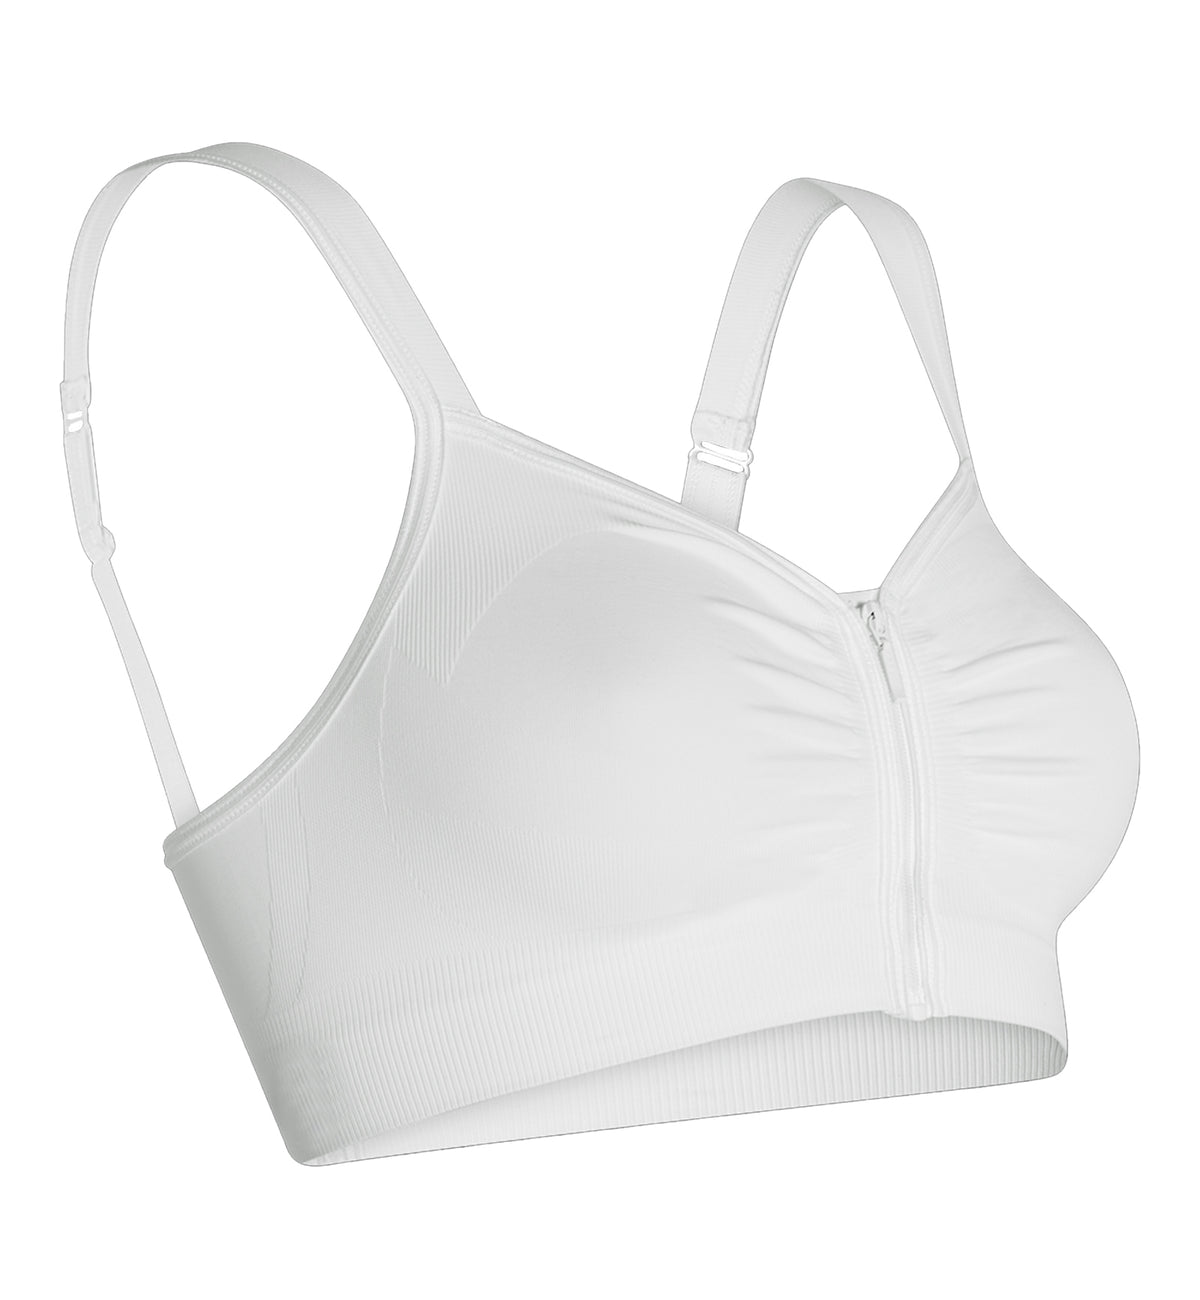 Carefix Anna Sleep/Comfort Zipper Bra (327050),Medium,White - White,Medium